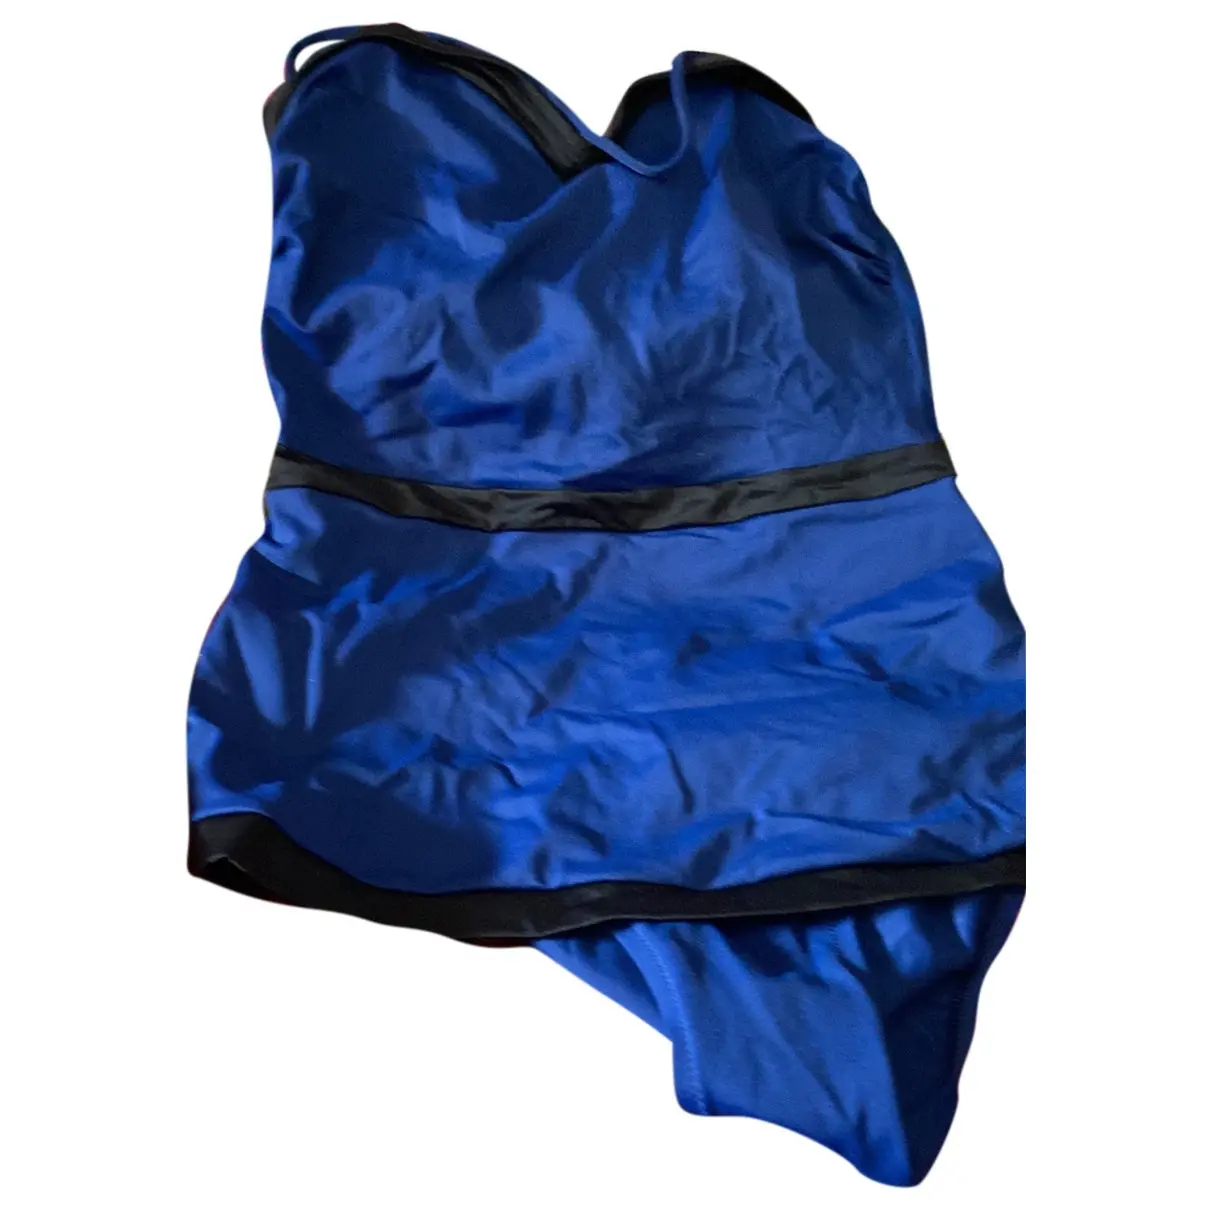 One-piece swimsuit Yves Saint Laurent - Vintage